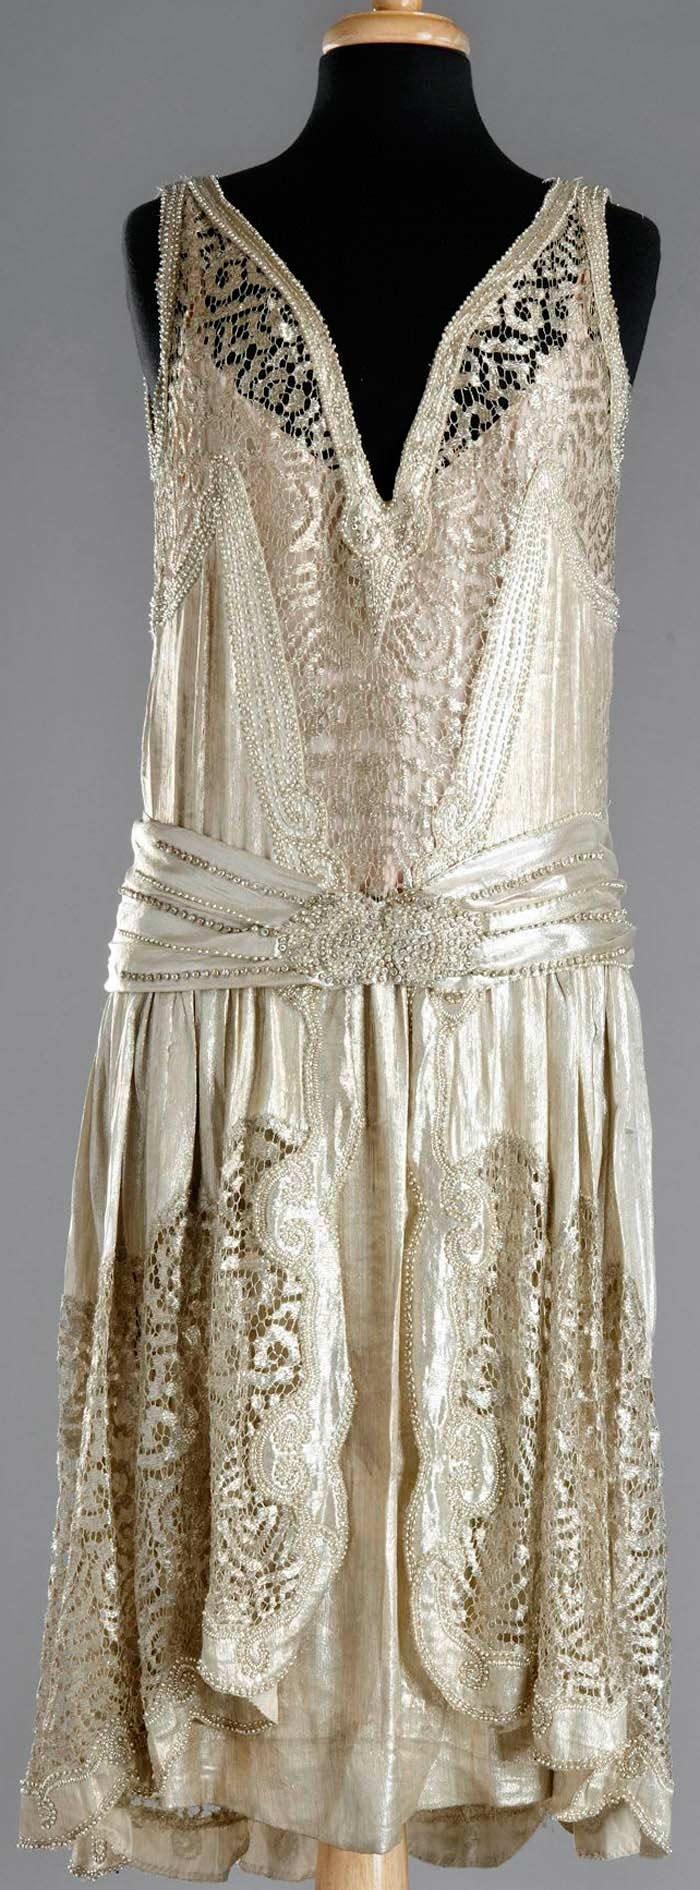 Hochzeit - Charleston-Kleid, 1920 - Atemberaubende Details